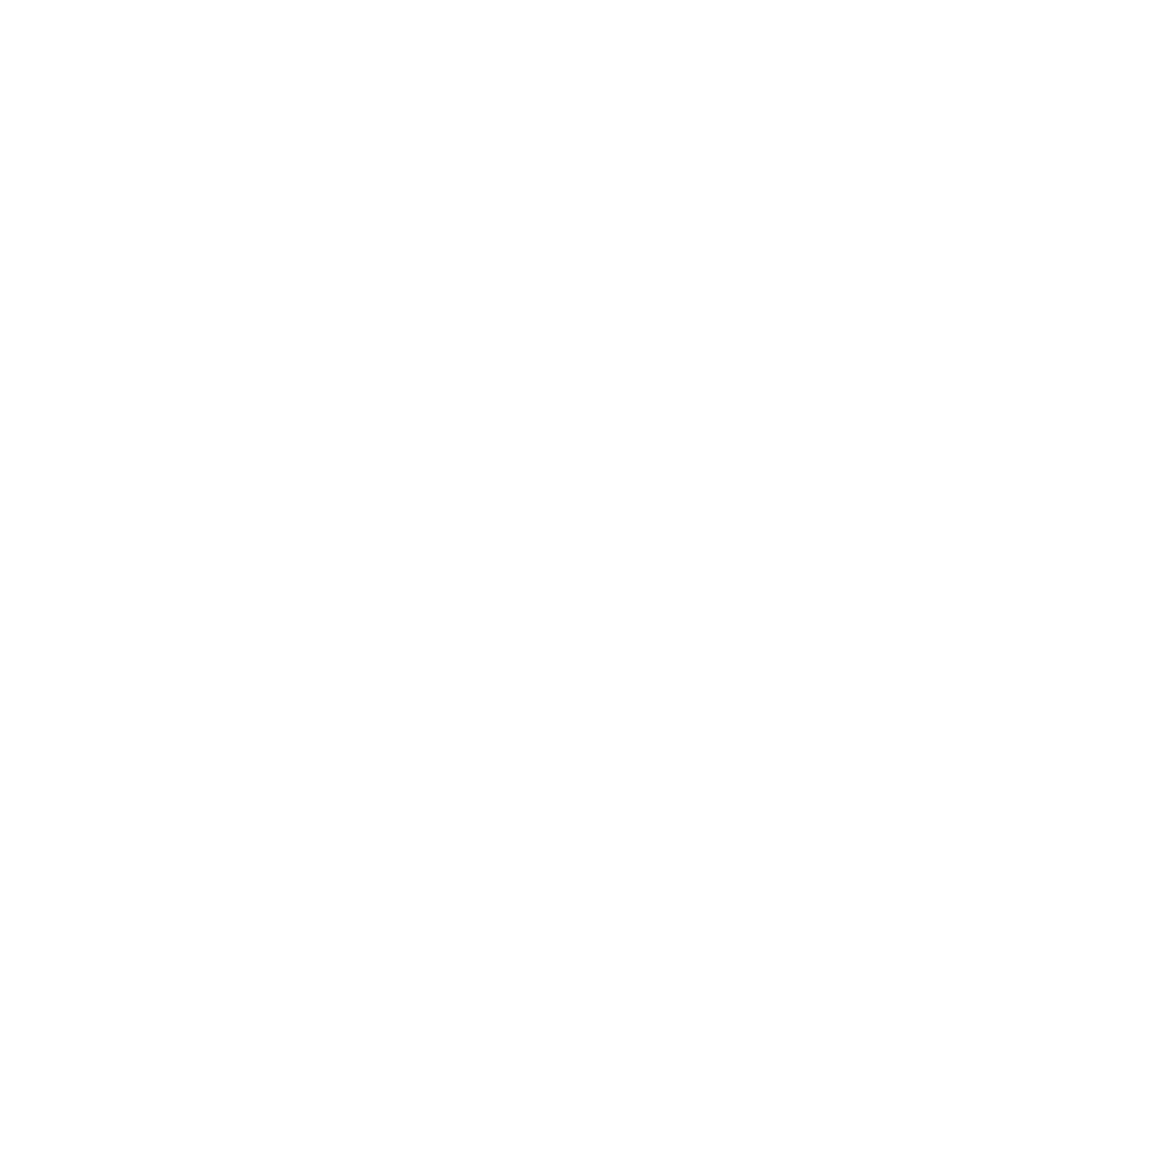 ComplyCube est certifié ISO 30107-3 niveau 2 PAD